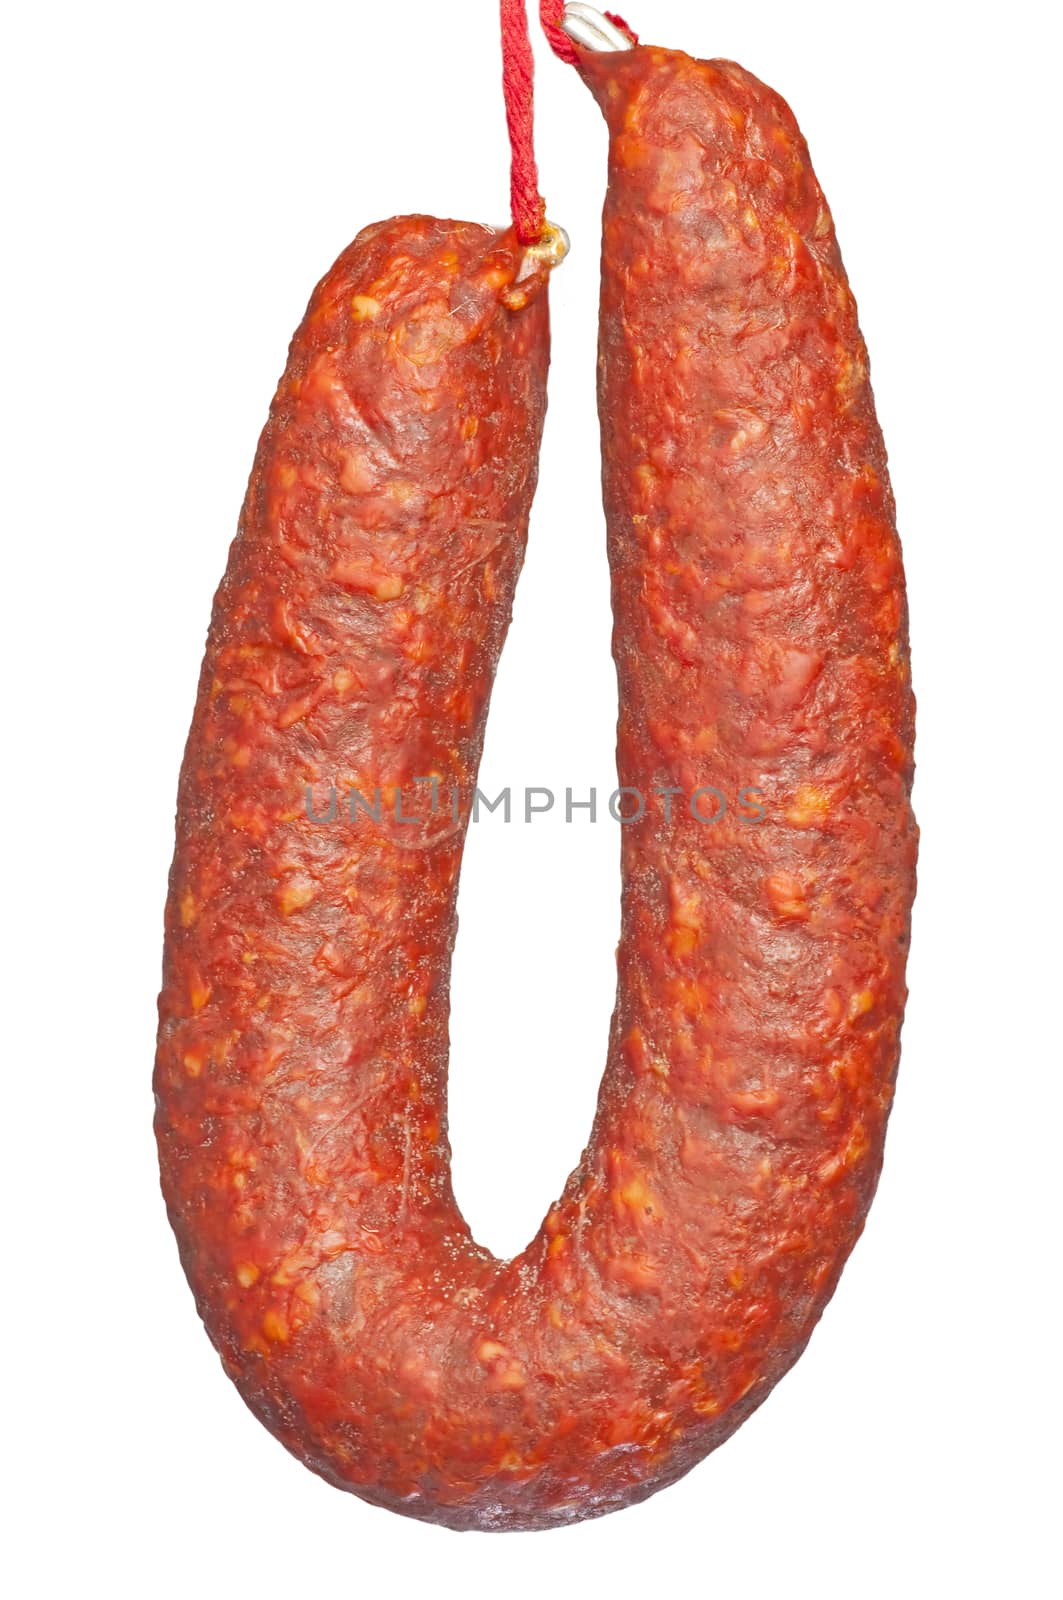 Chorizo sausage of Spain